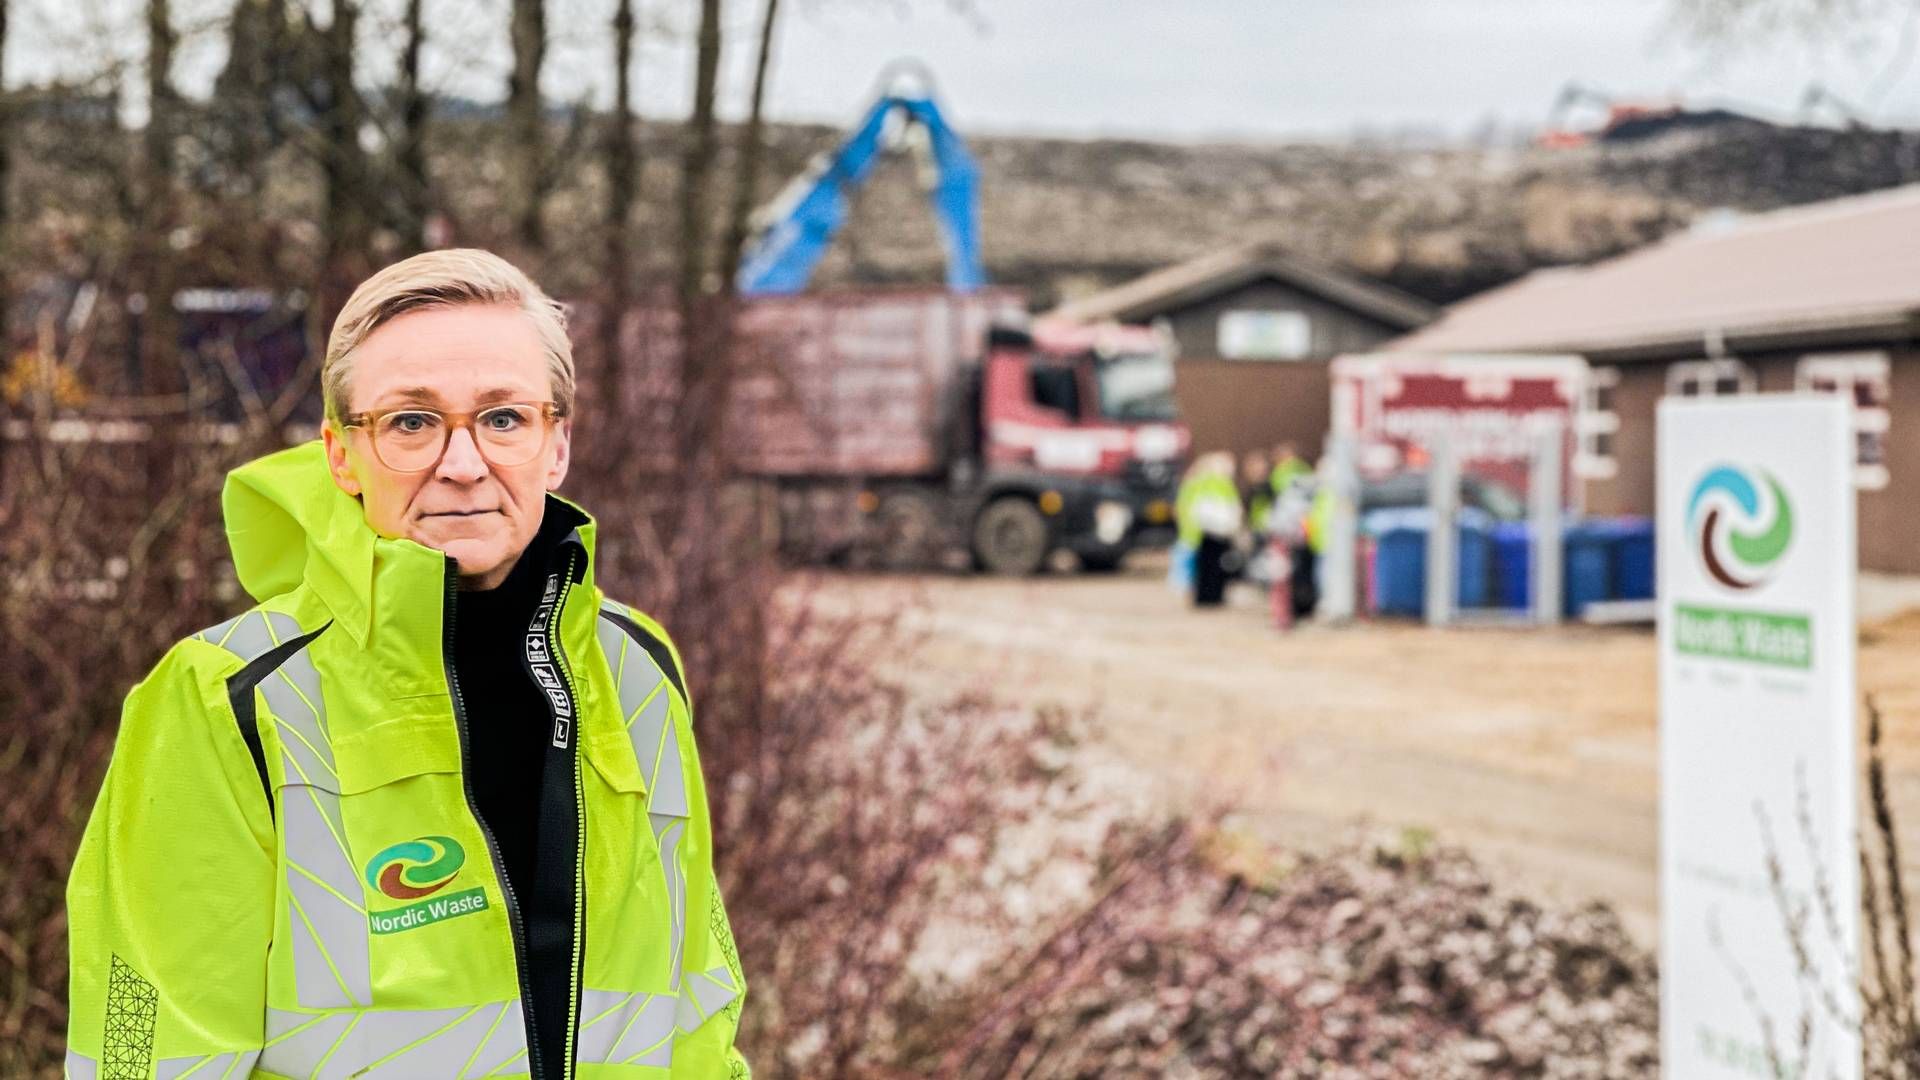 Lene Lange vurderede også over for CleantechWatch i december, at virksomheden havde sikret sig den nødvendige kapital til at kunne fortsætte driften efter håndteringen af jordskredet. | Foto: Nordic Waste / Mikkel Wenzel Andreasen